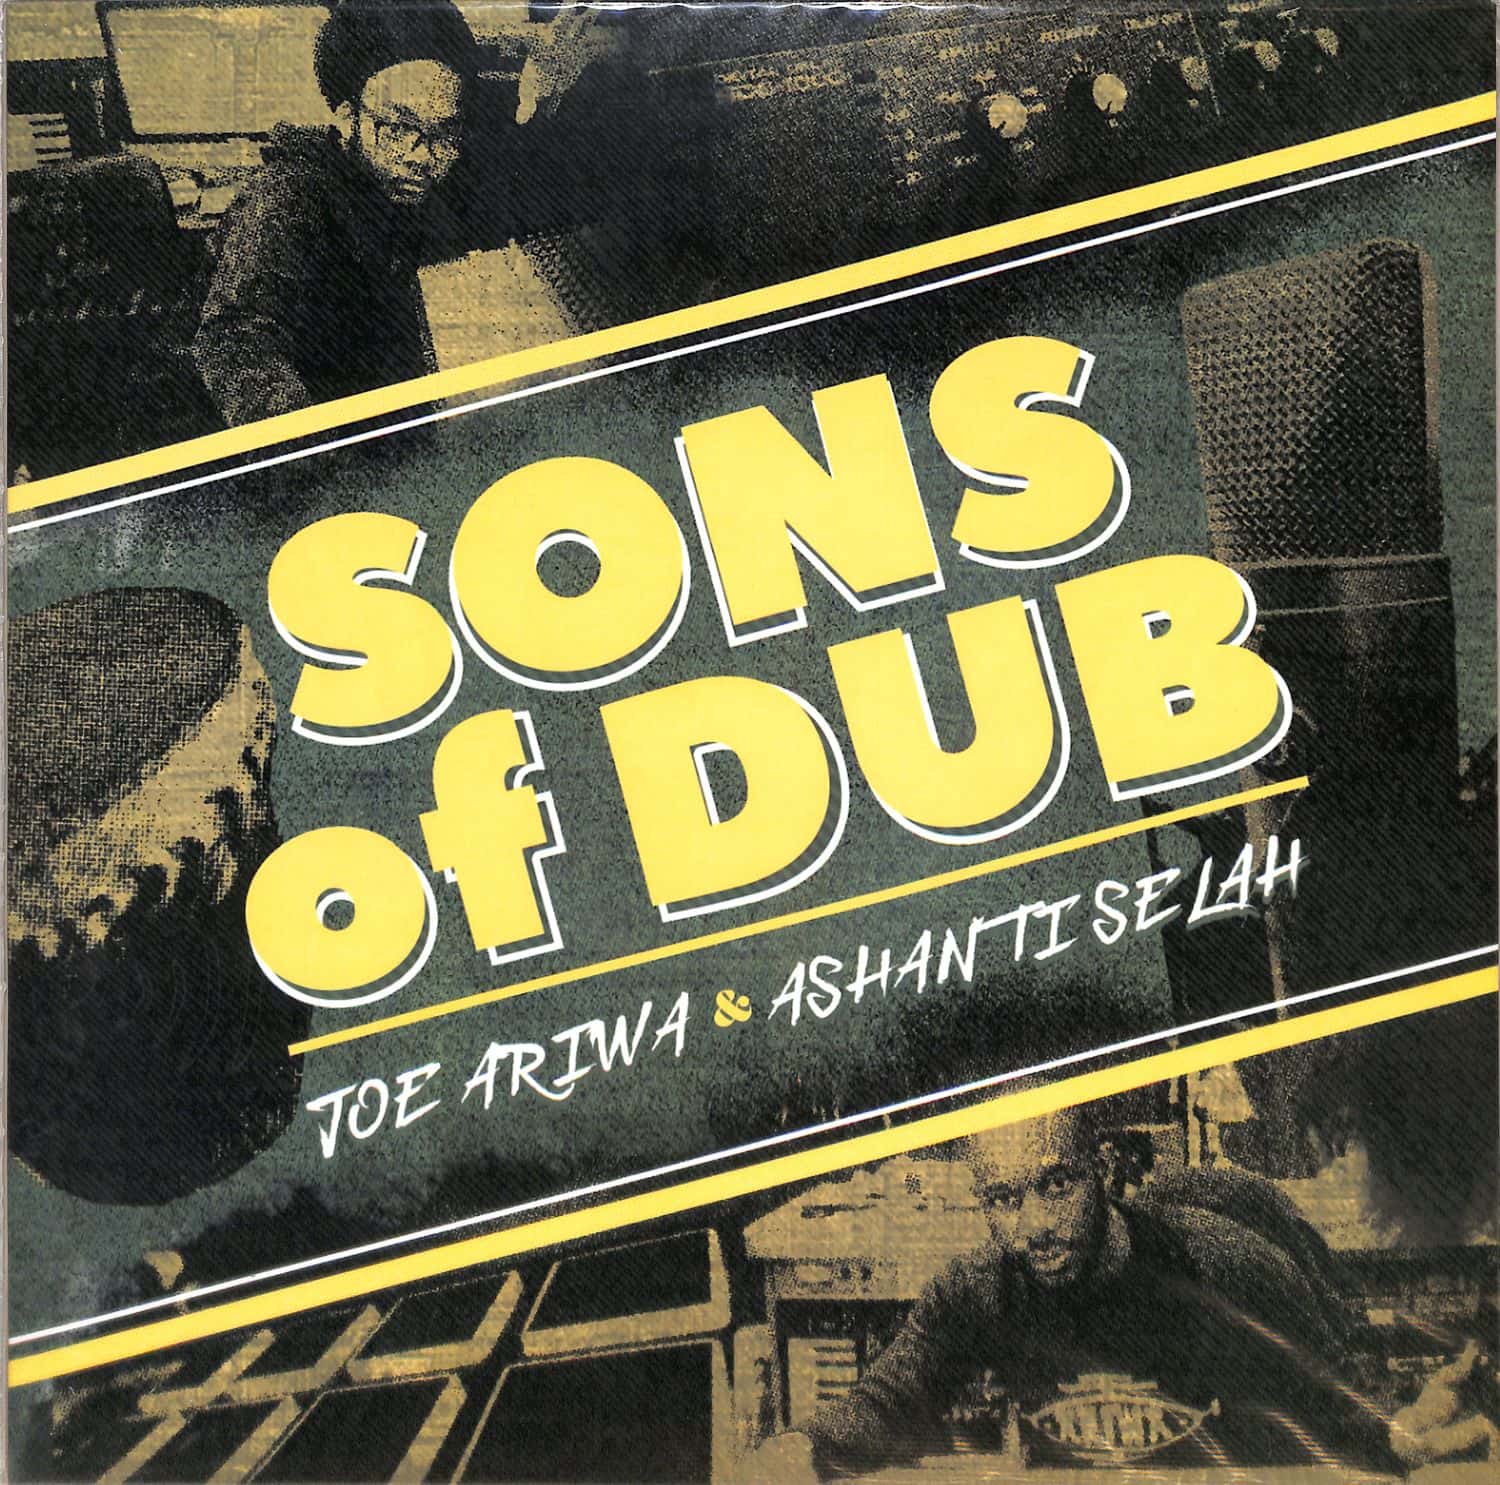 Joe Ariwa / Selah Ashanti - SONS OF DUB 